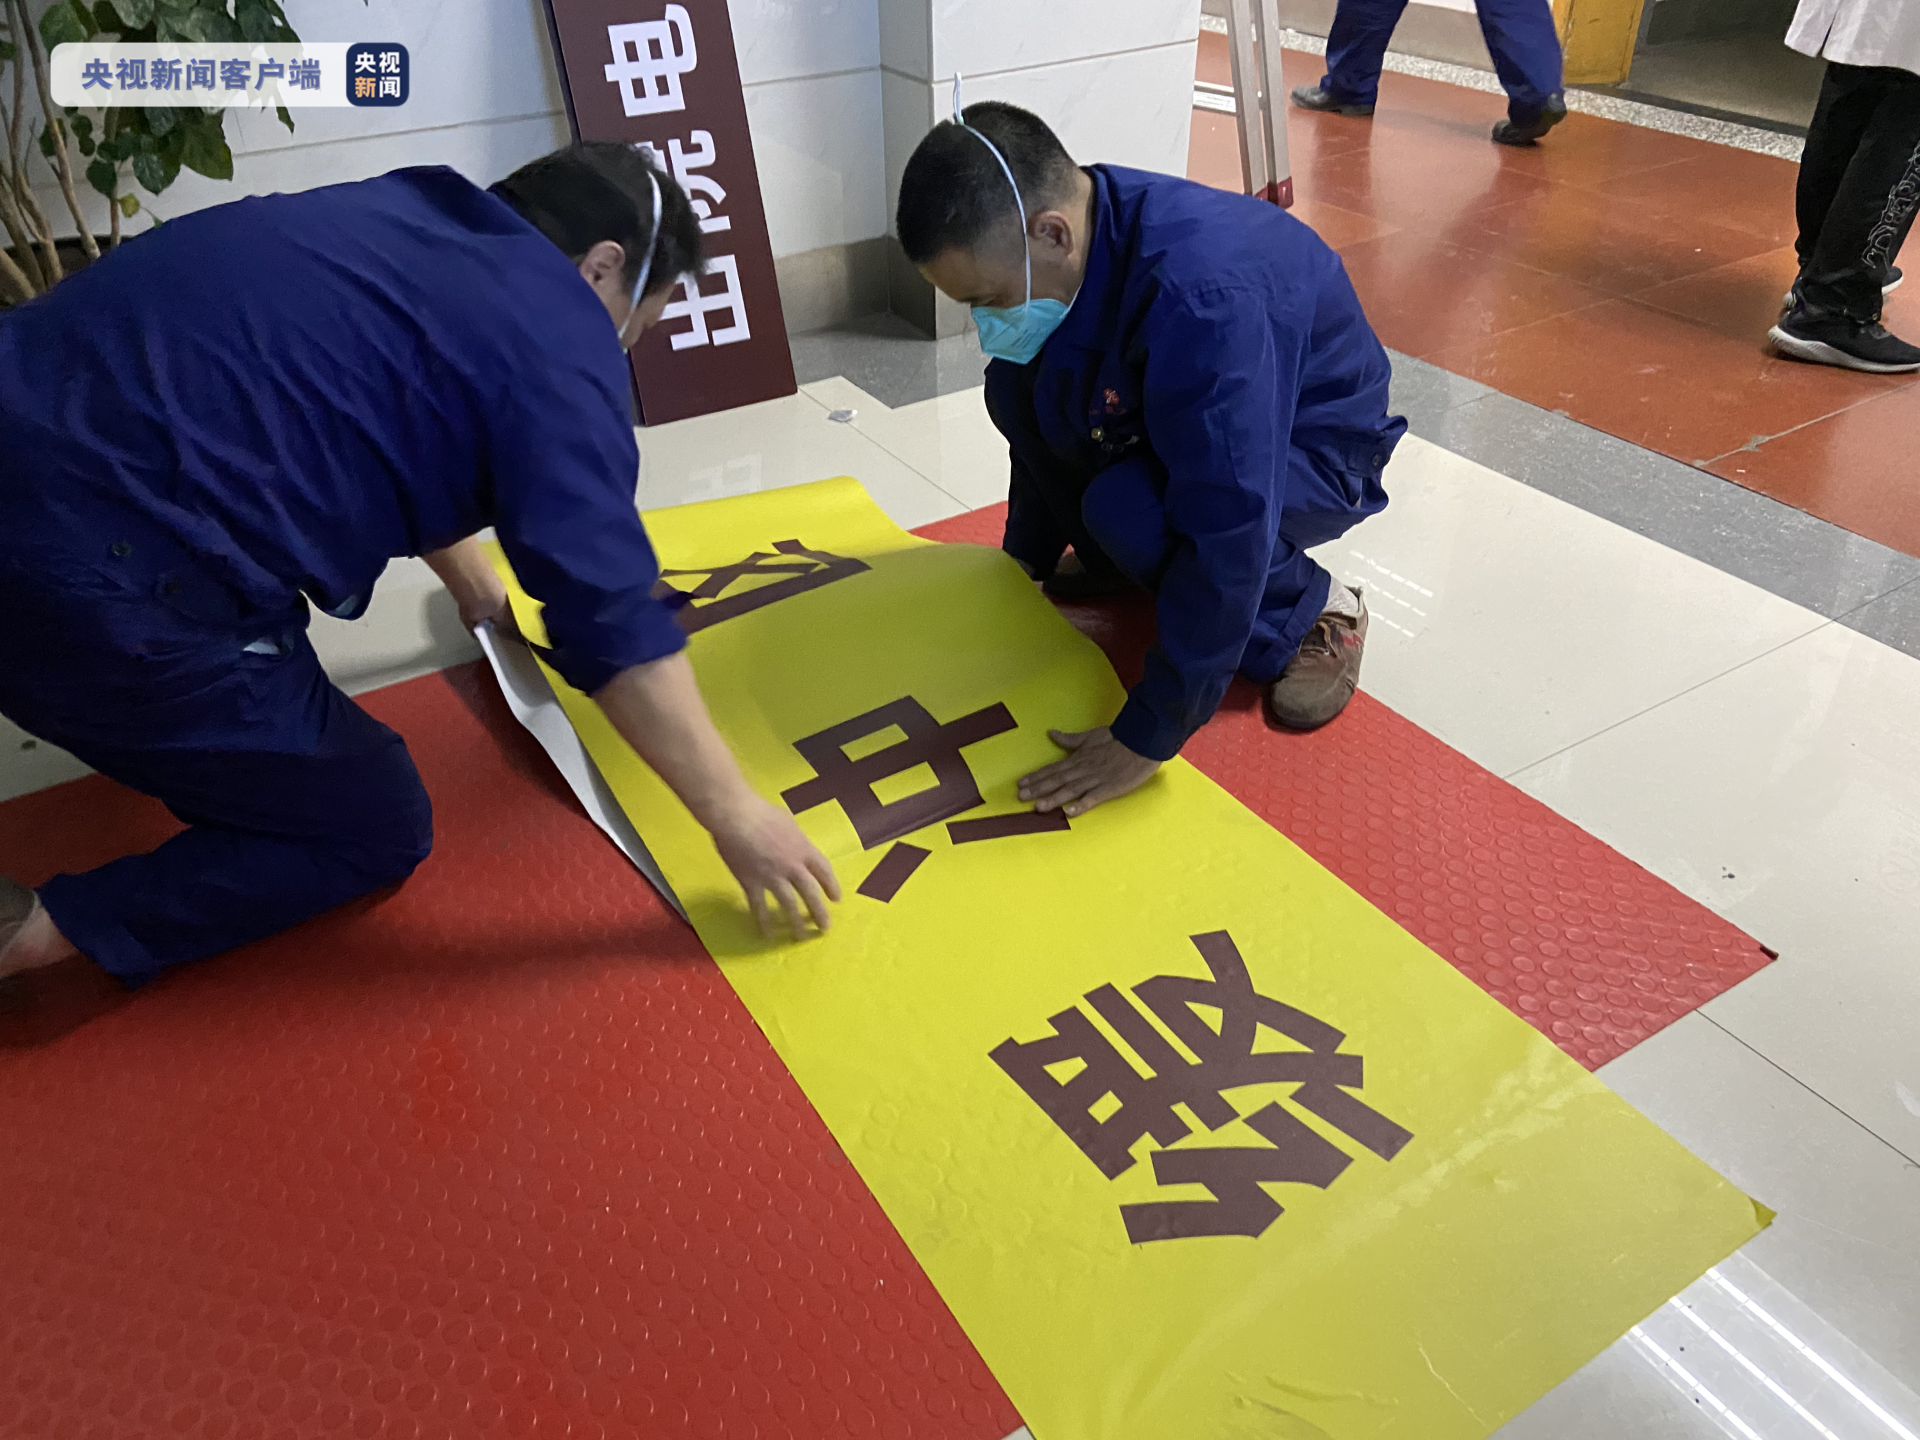 上海曙光医院转为新冠肺炎定点救治医院 已收治